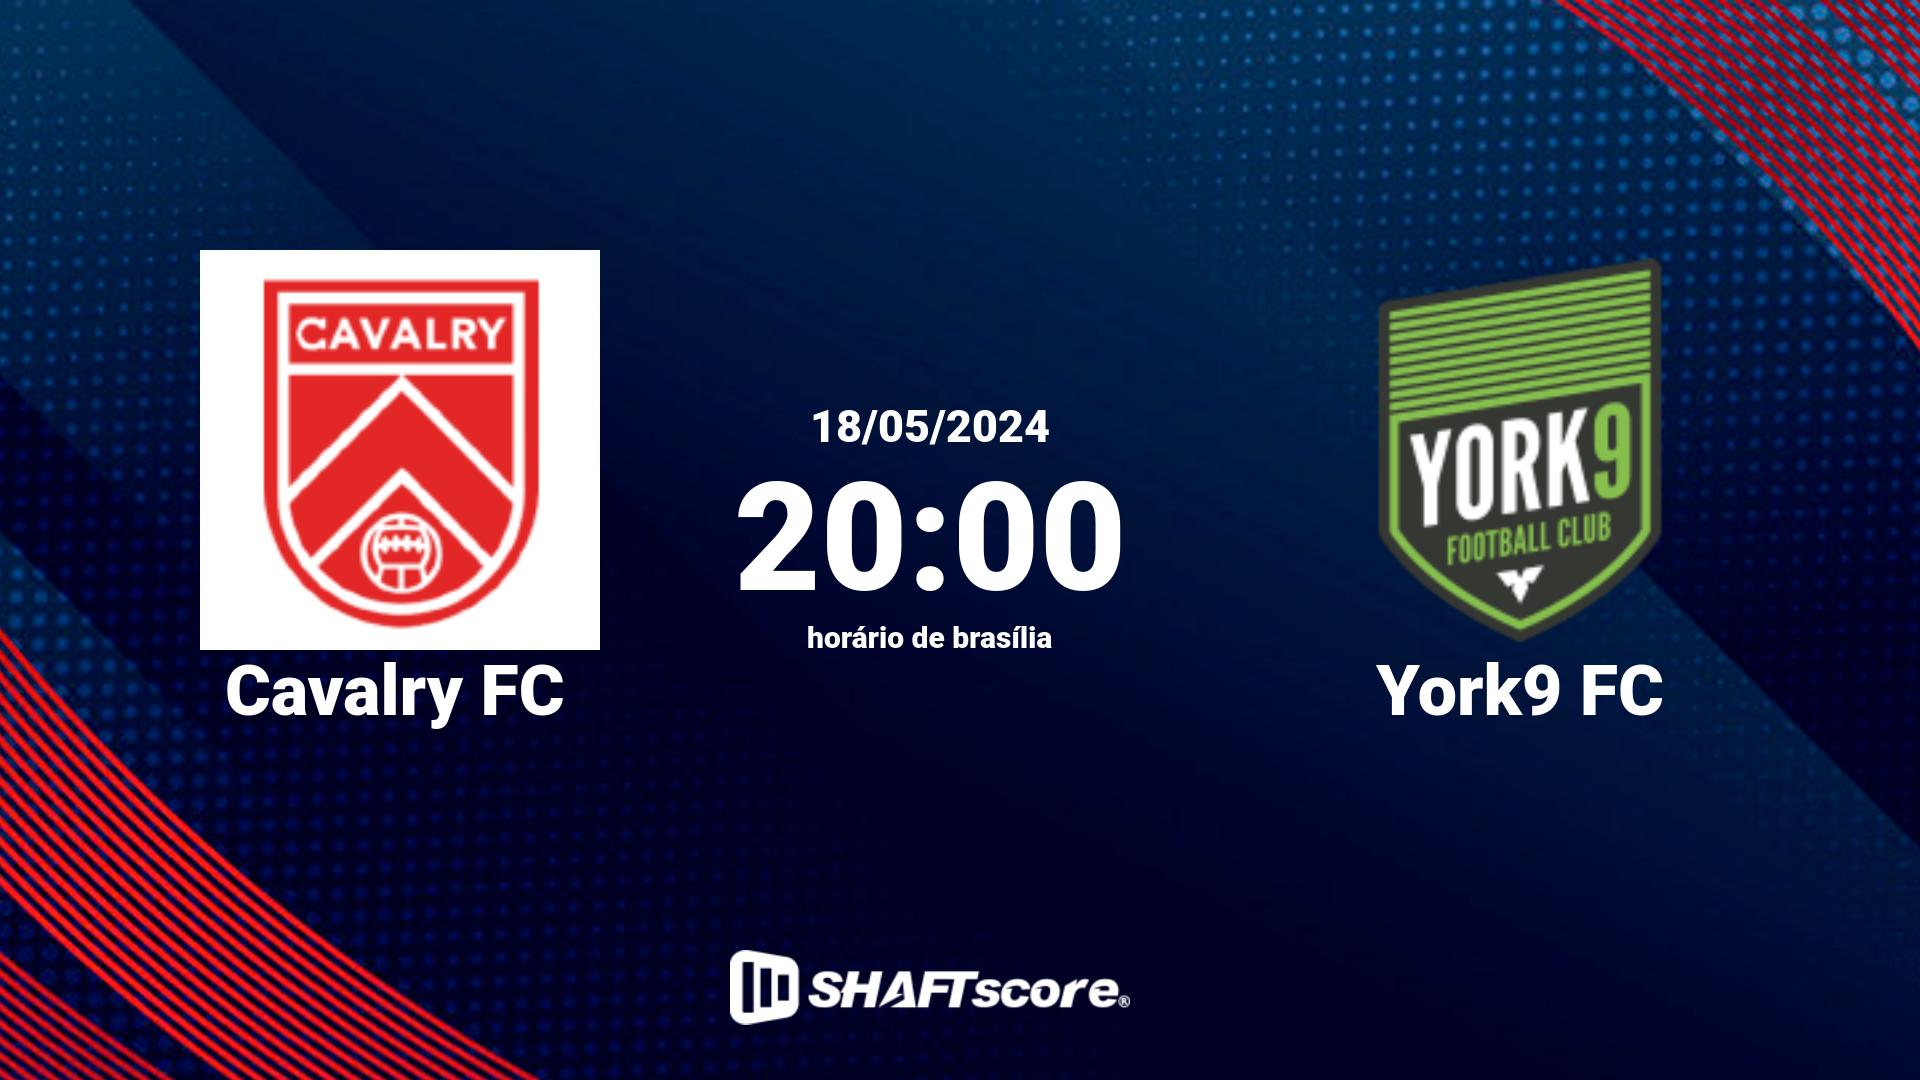 Estatísticas do jogo Cavalry FC vs York9 FC 18.05 20:00